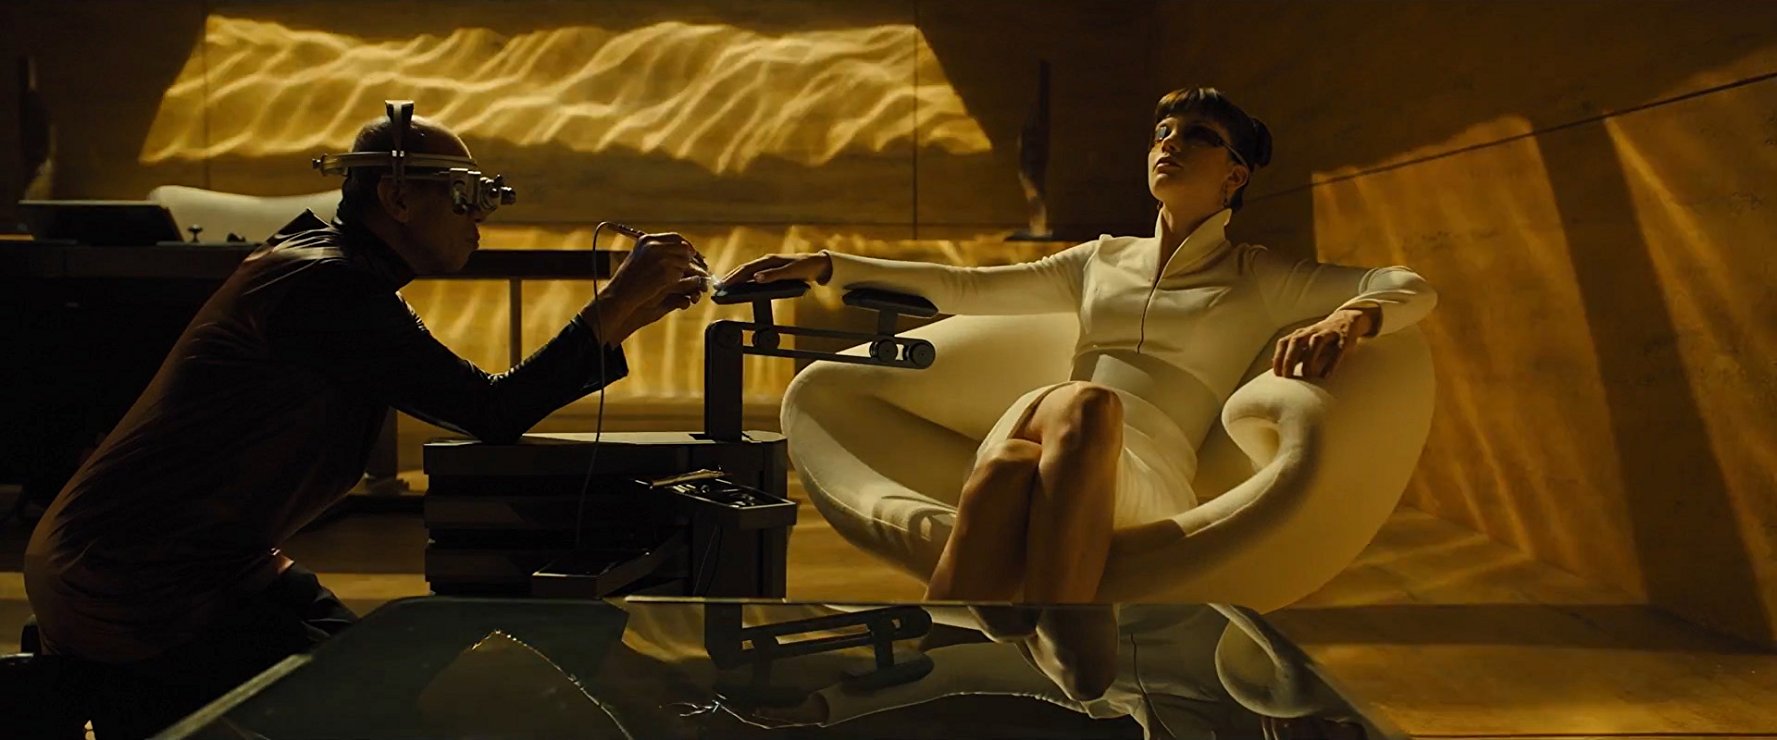 Sylvia Hoeks As Luv In Blade Runner 2049 Wallpapers